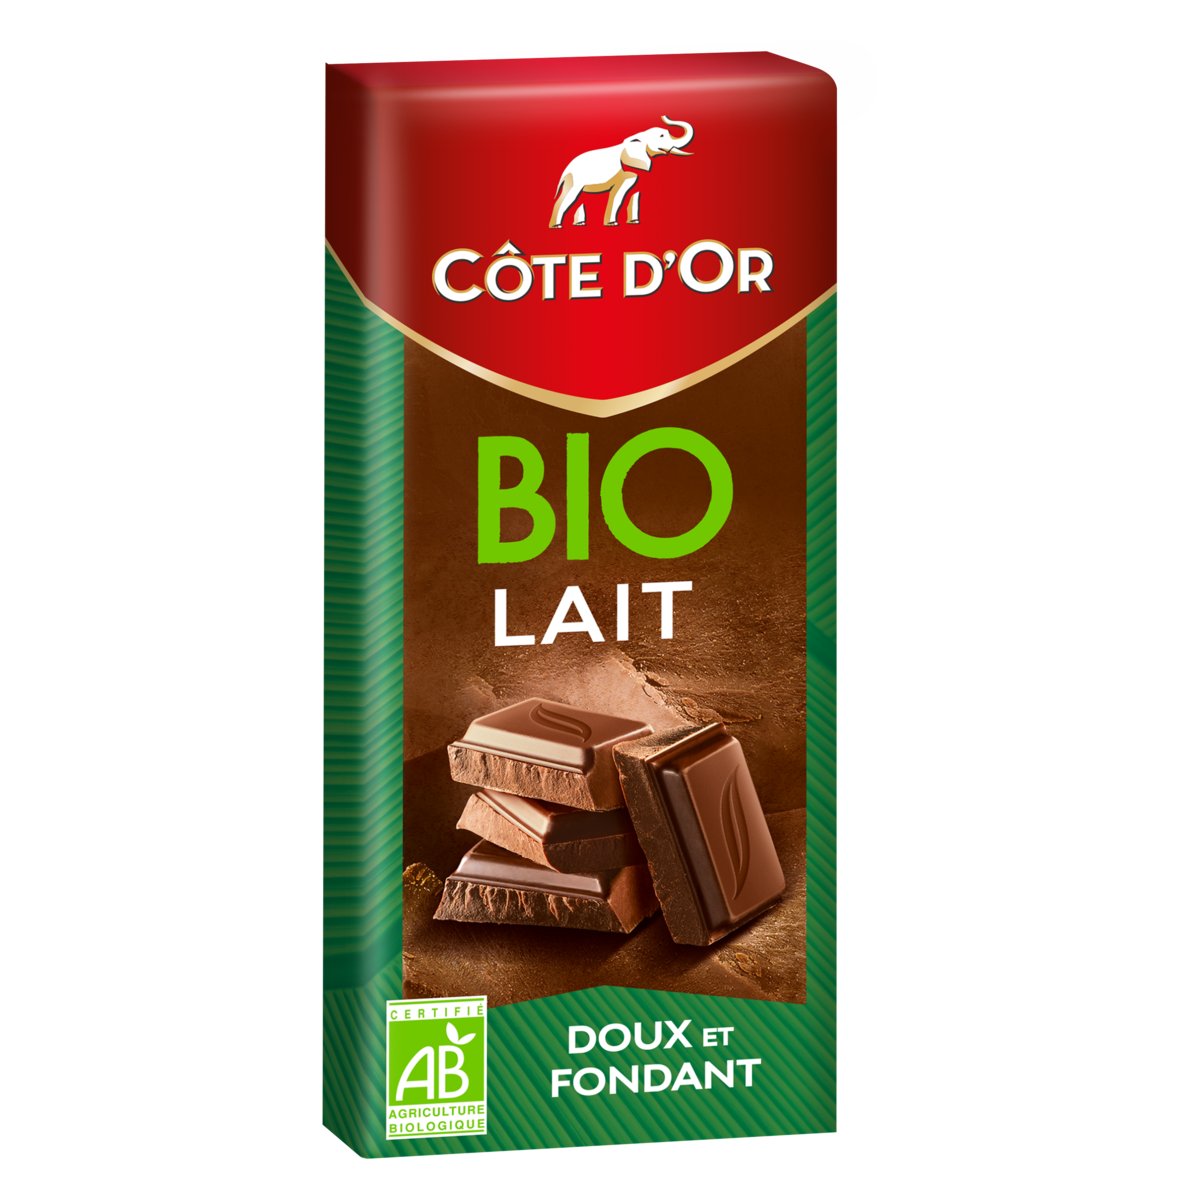 COTE D'OR Tablette de chocolat au lait bio 1 pièce 150g